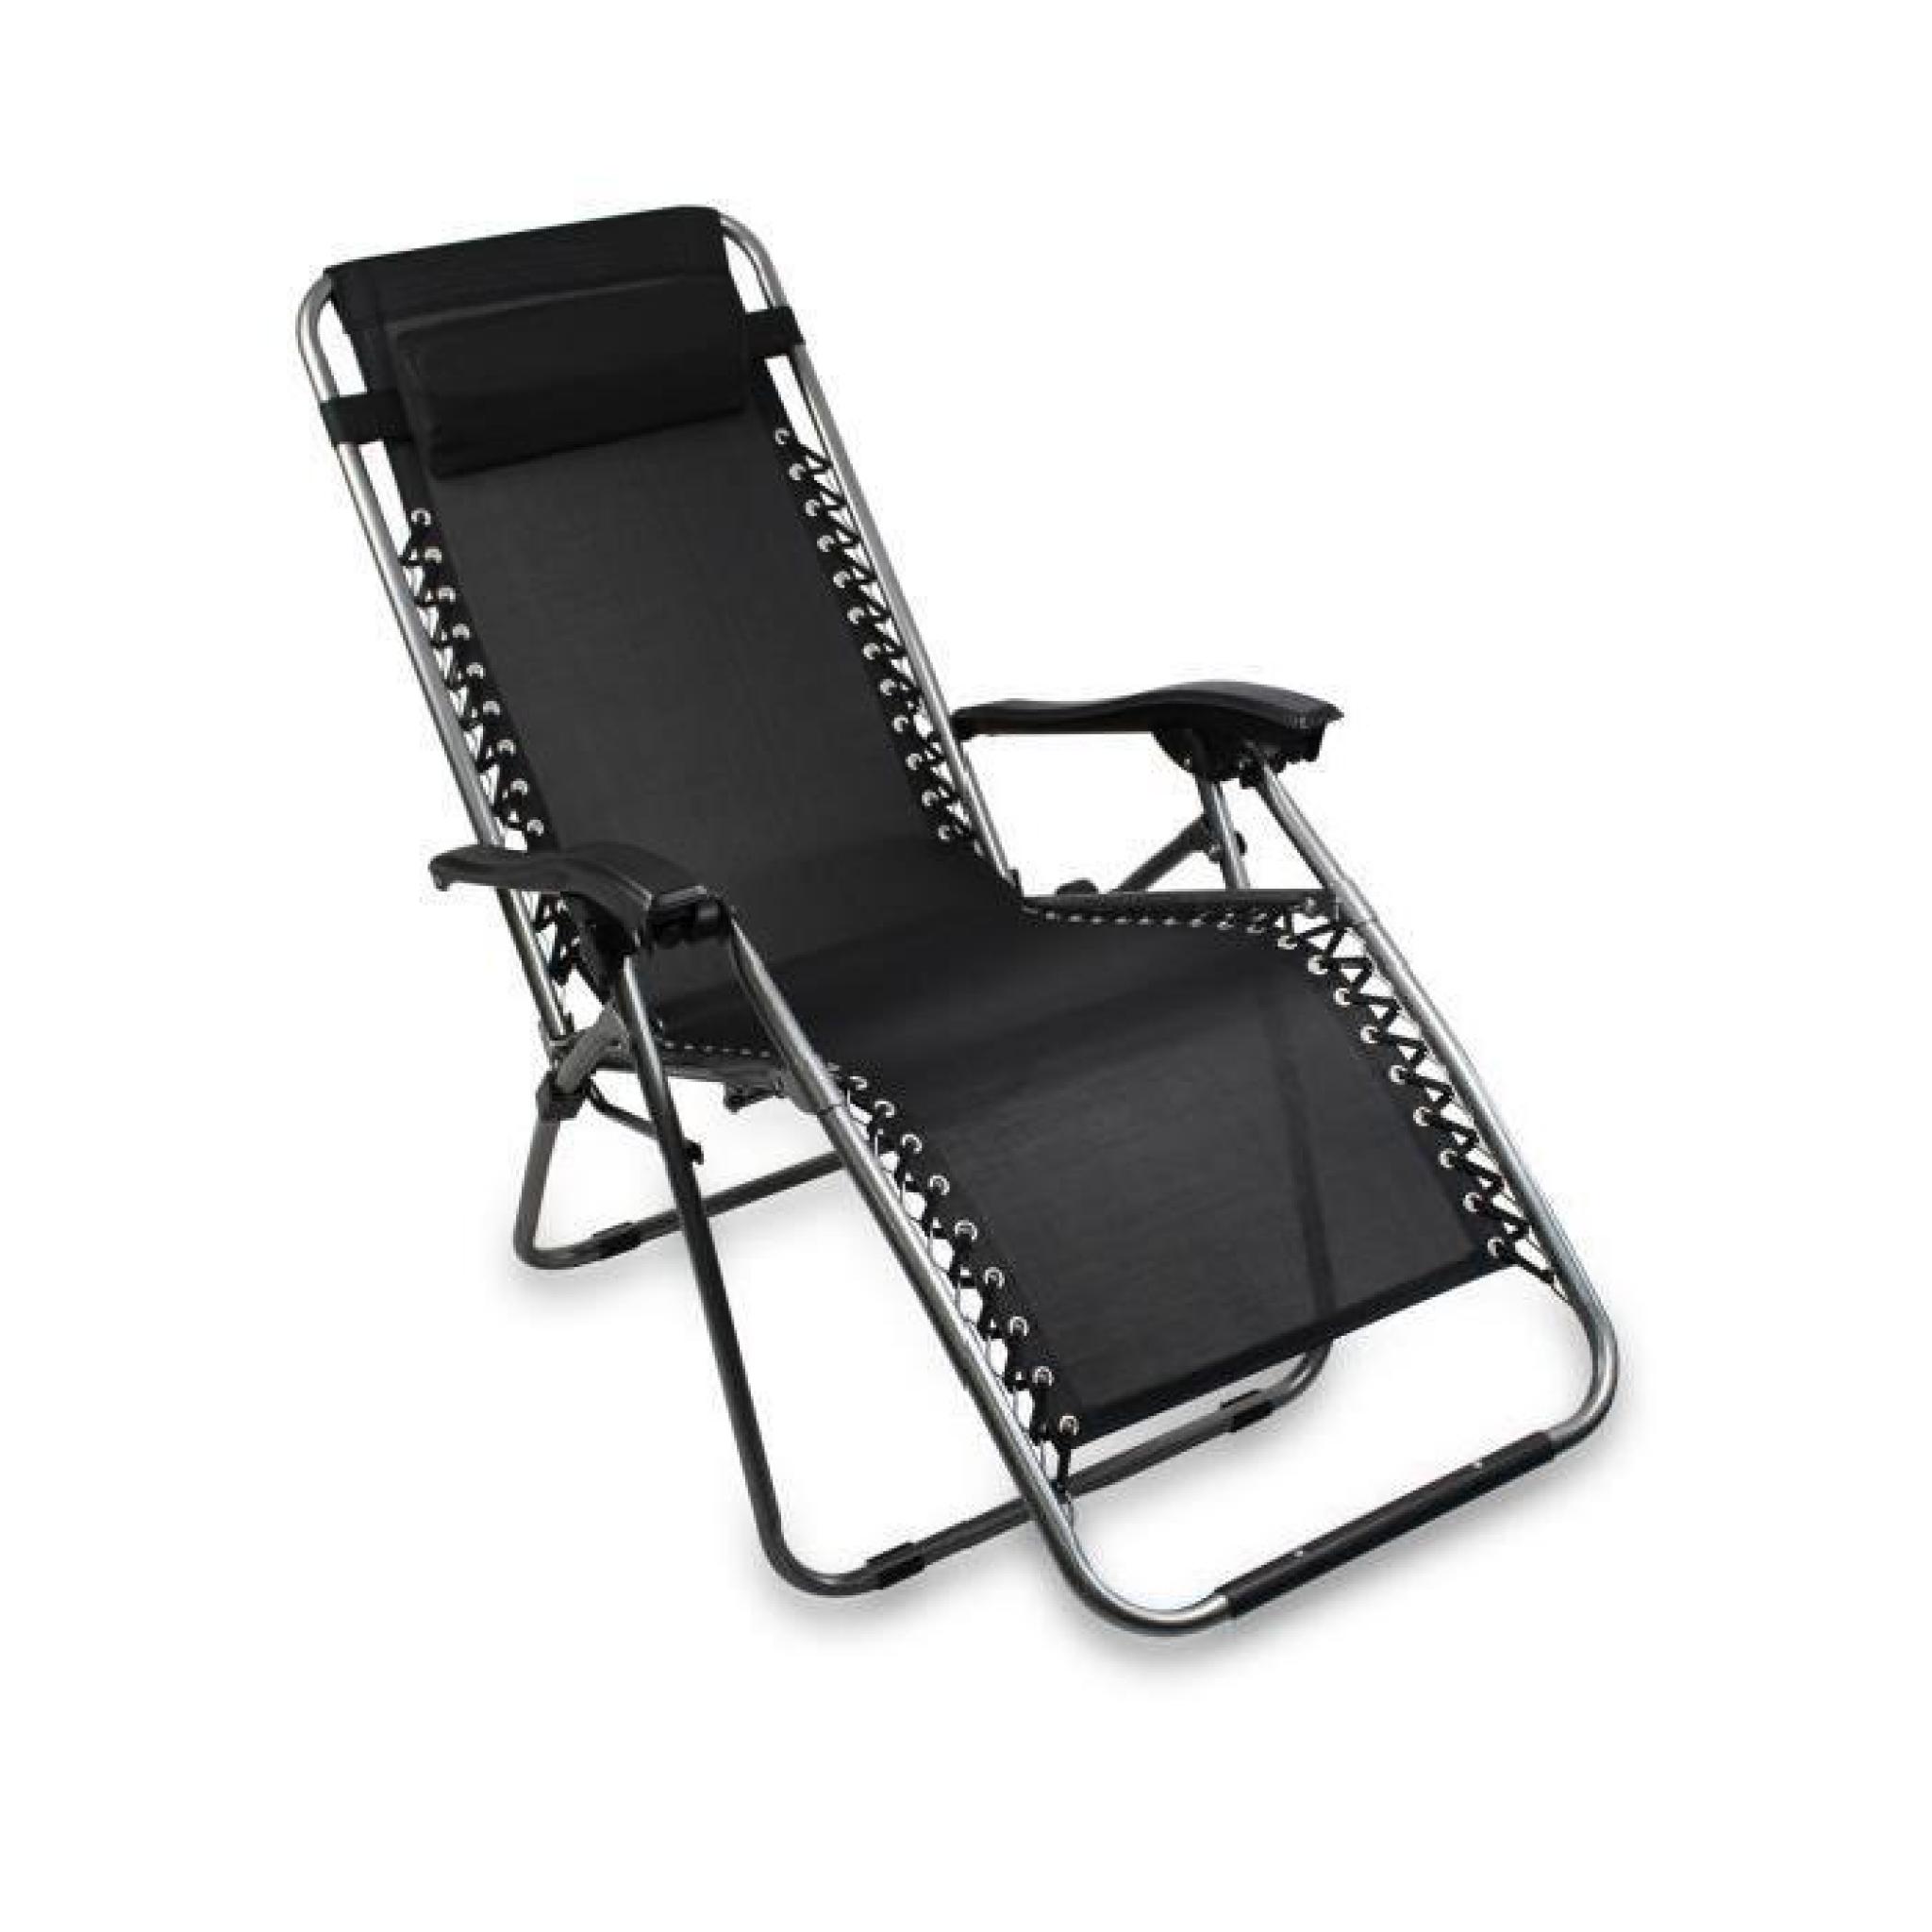 Chaise longue bain de soleil, chaise de jardin inclinable, transat métal et toile textilène noire pas cher